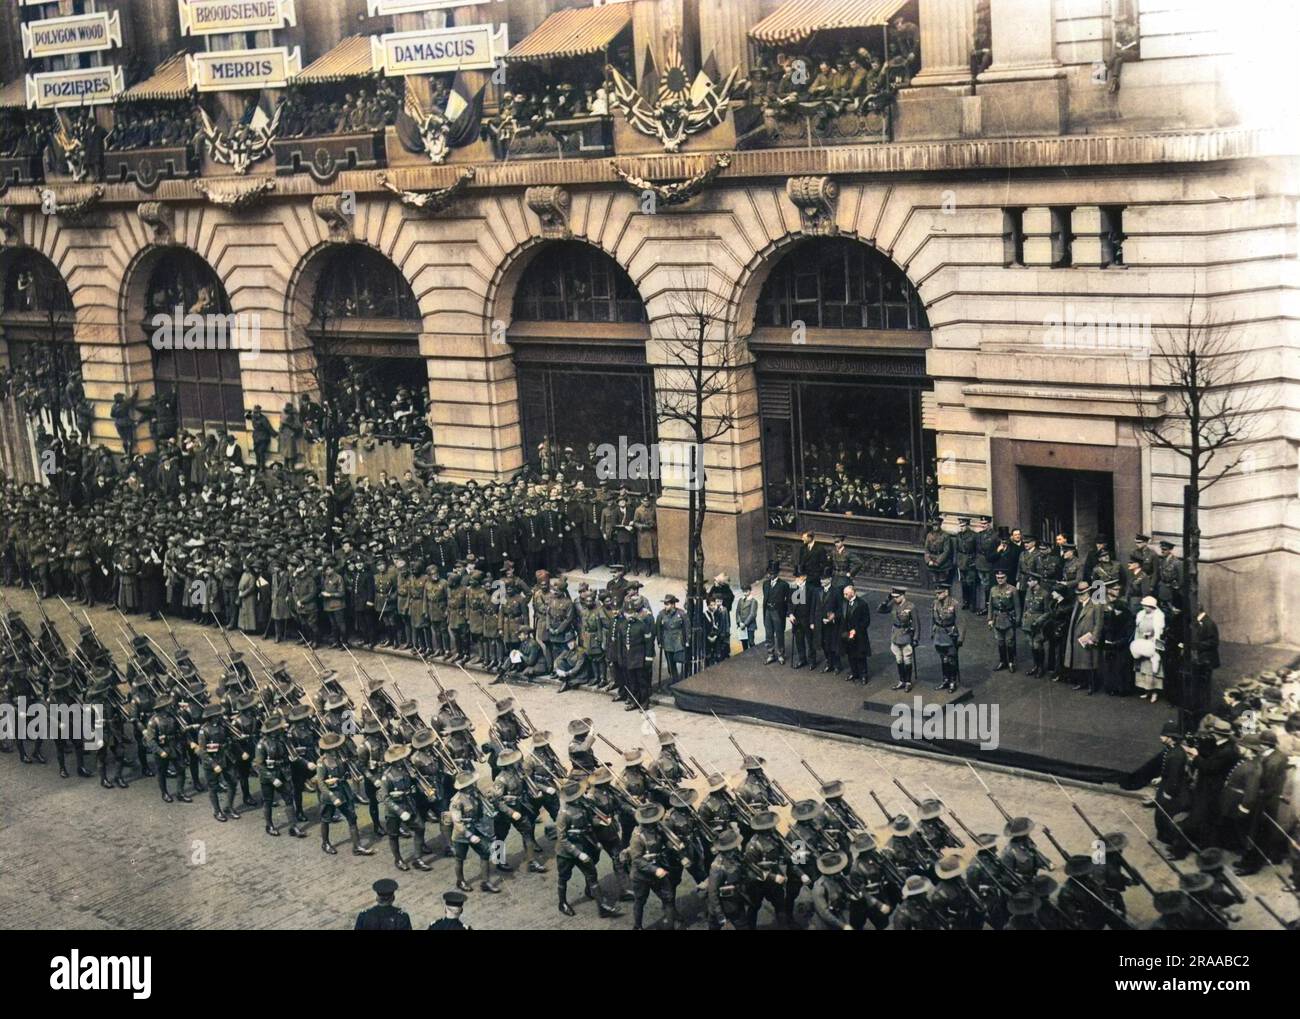 Anzacs défilent à Londres le jour de l'Anzac, le 25th avril 1919. Le 25th avril a été officiellement nommé jour de l'ANZAC (corps d'armée australien et néo-zélandais) en 1916. Les troupes du Commonwealth de l'Inde peuvent également être vues en regardant la parade. Date : 25th avril 1919 Banque D'Images